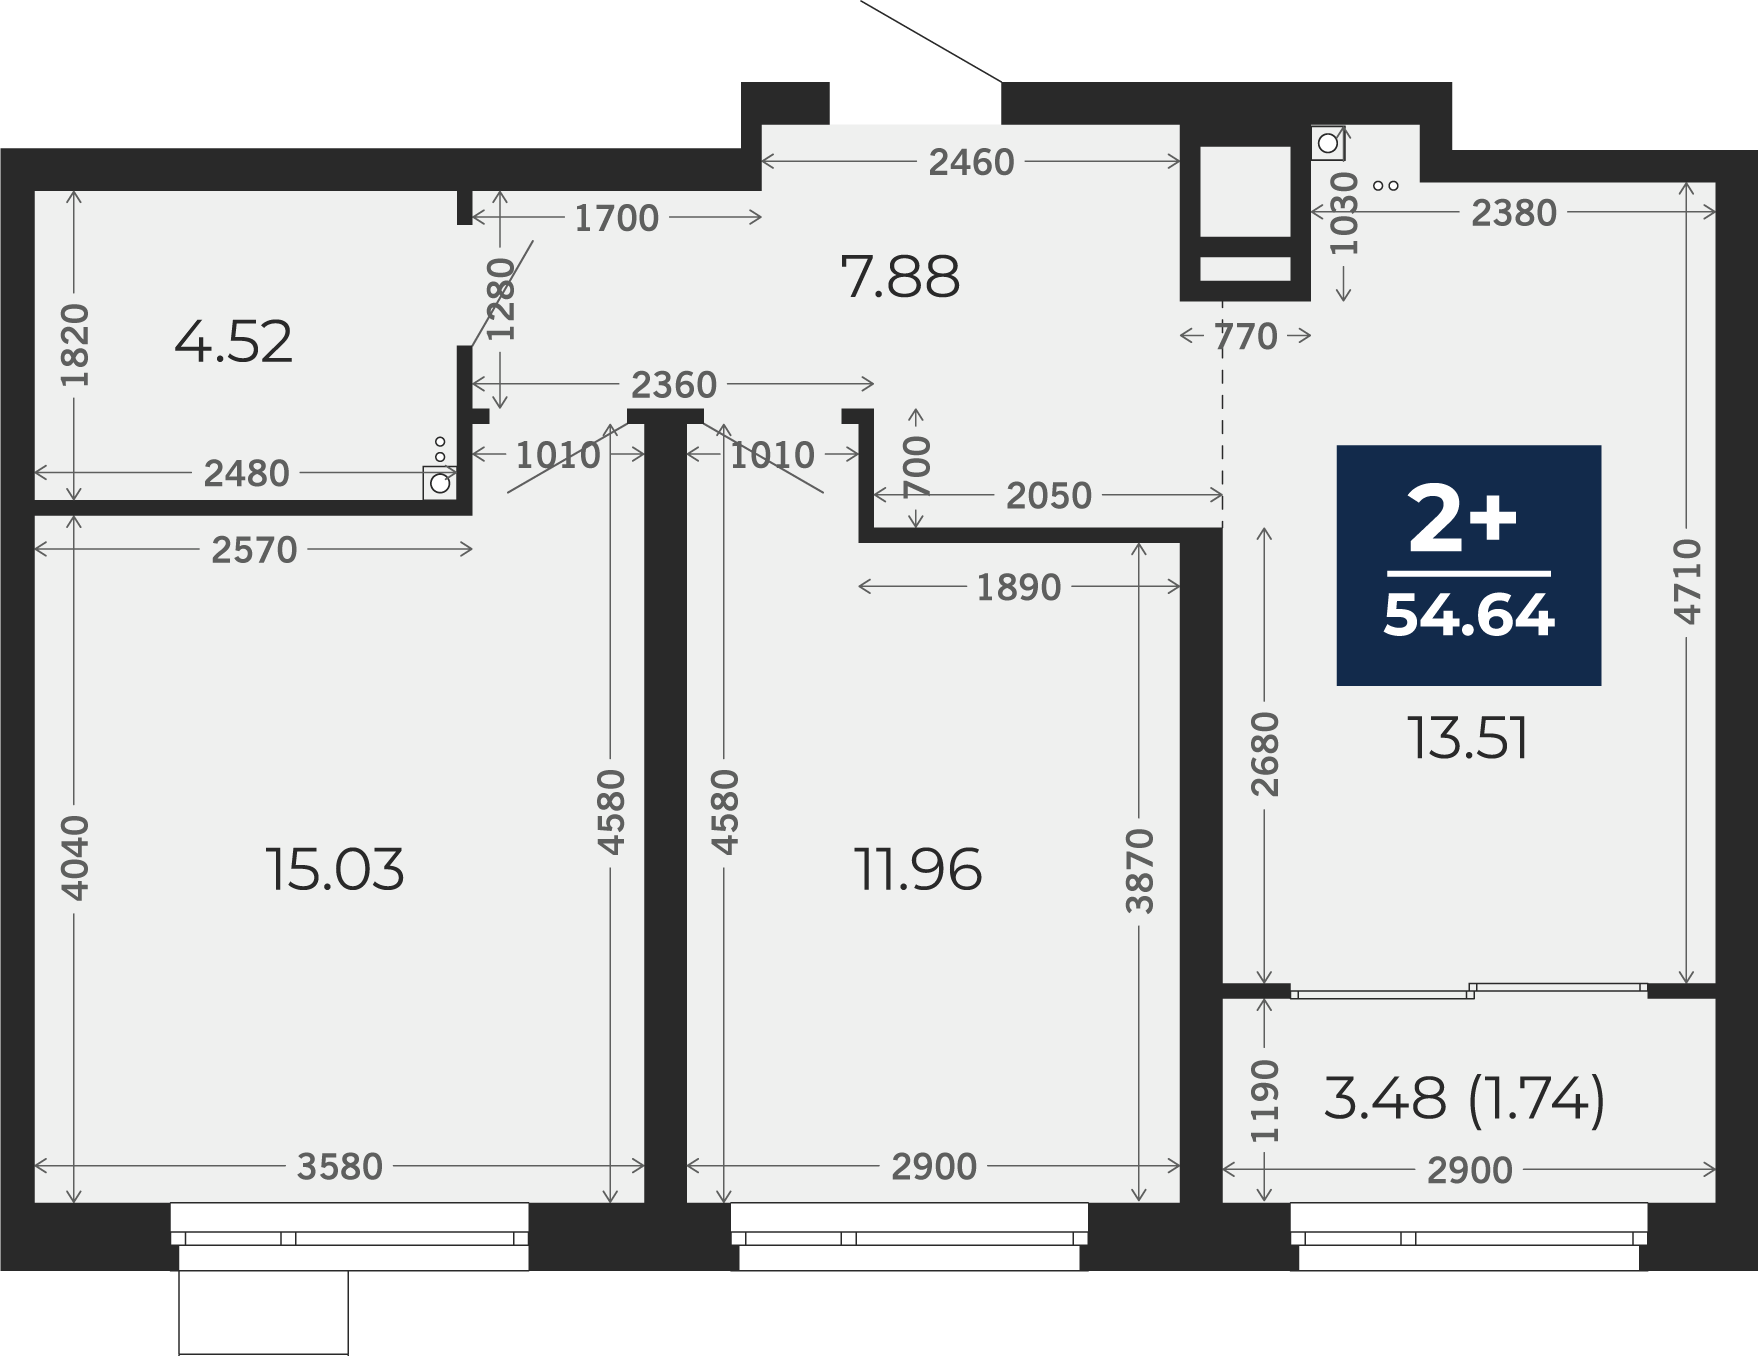 Квартира № 267, 2-комнатная, 54.64 кв. м, 16 этаж